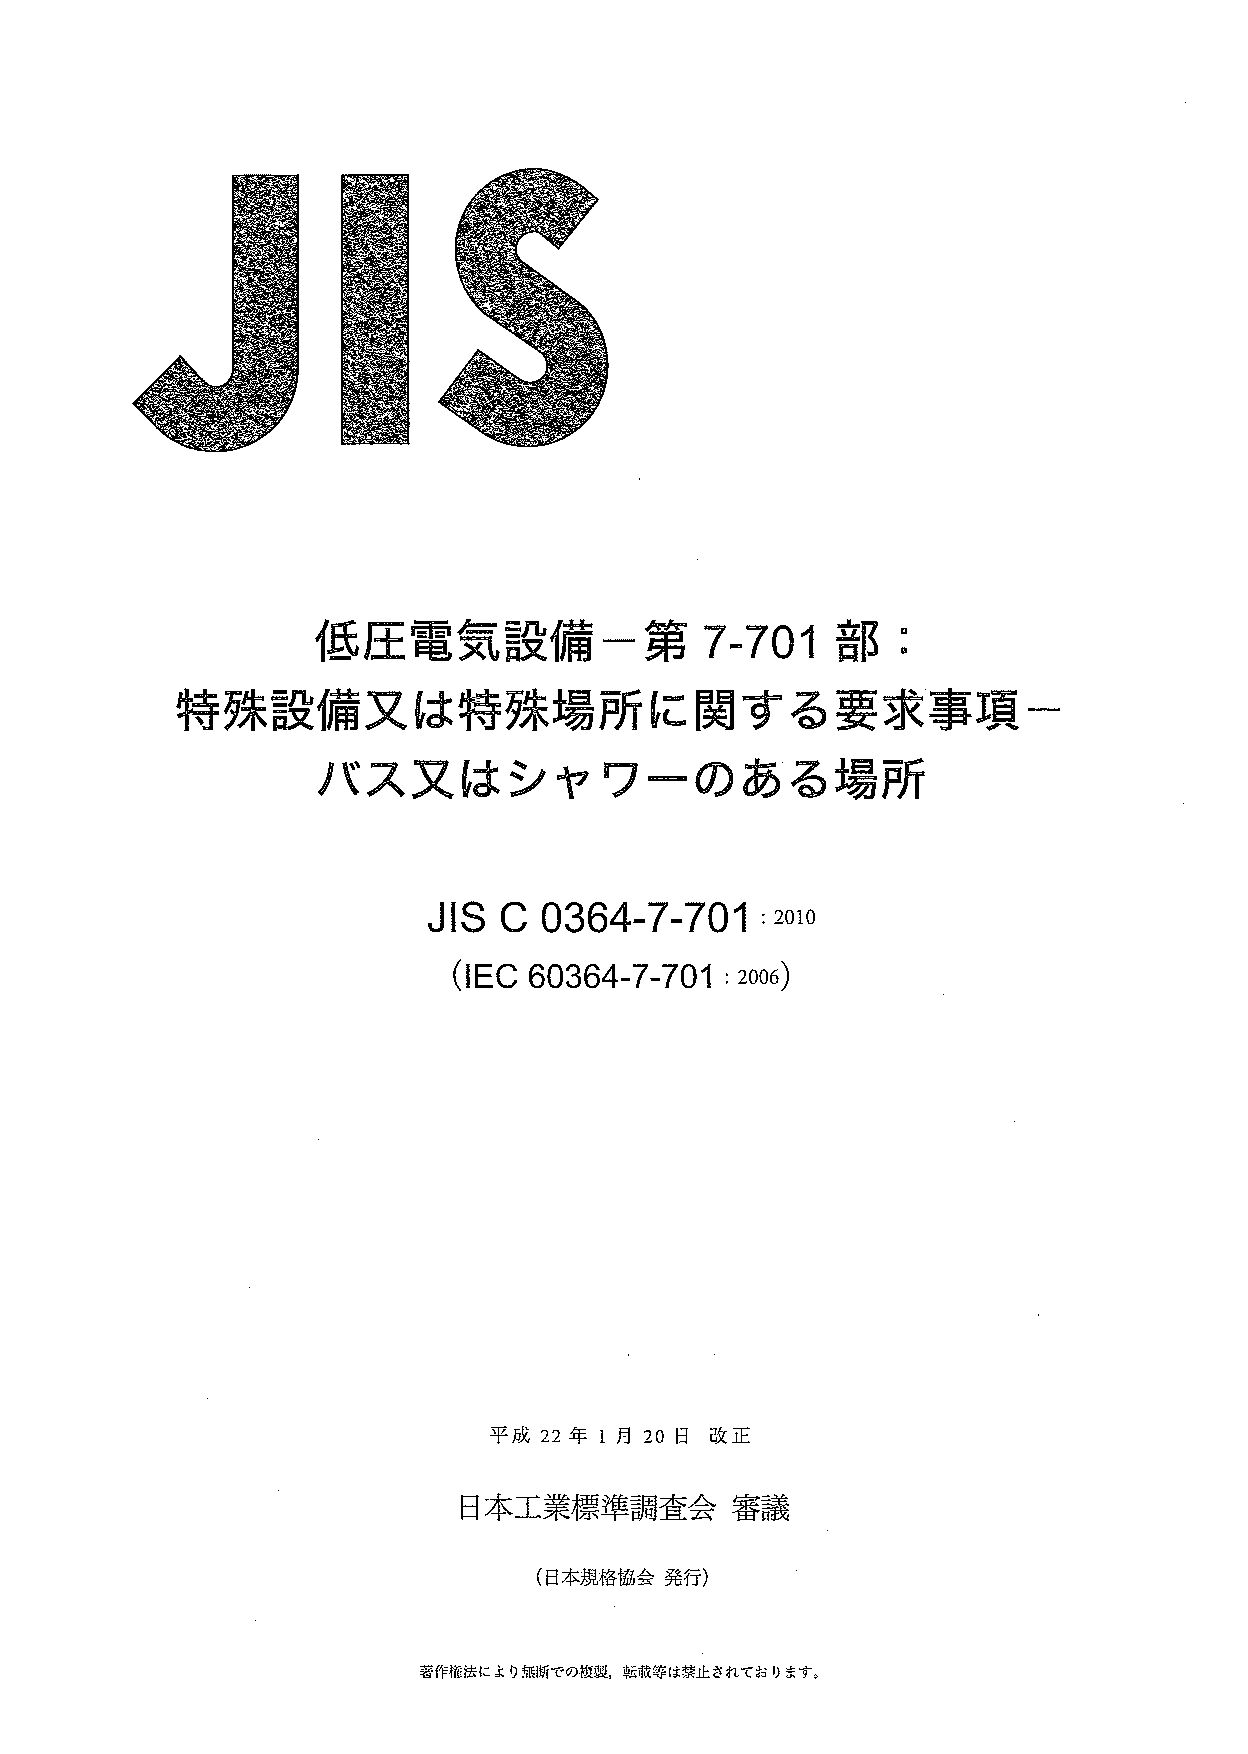 JIS C 0364-7-701:2010